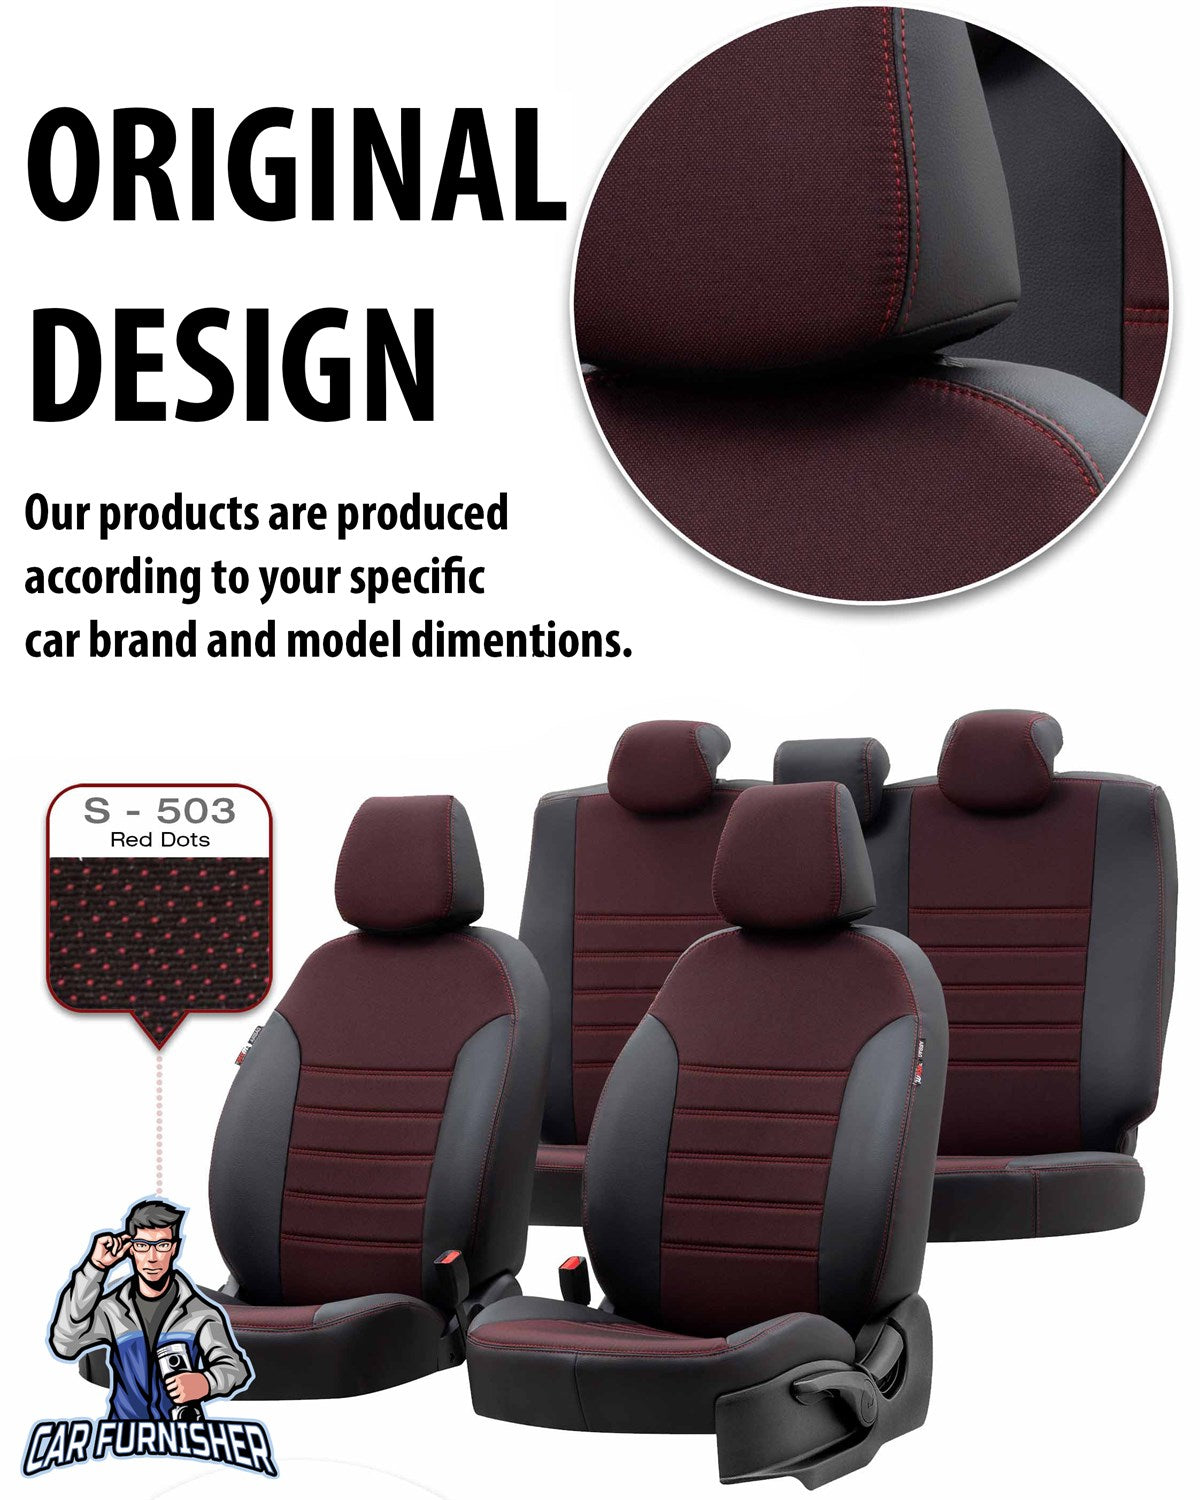 Daewoo Tacuma Seat Covers Paris Leather & Jacquard Design Black Leather & Jacquard Fabric